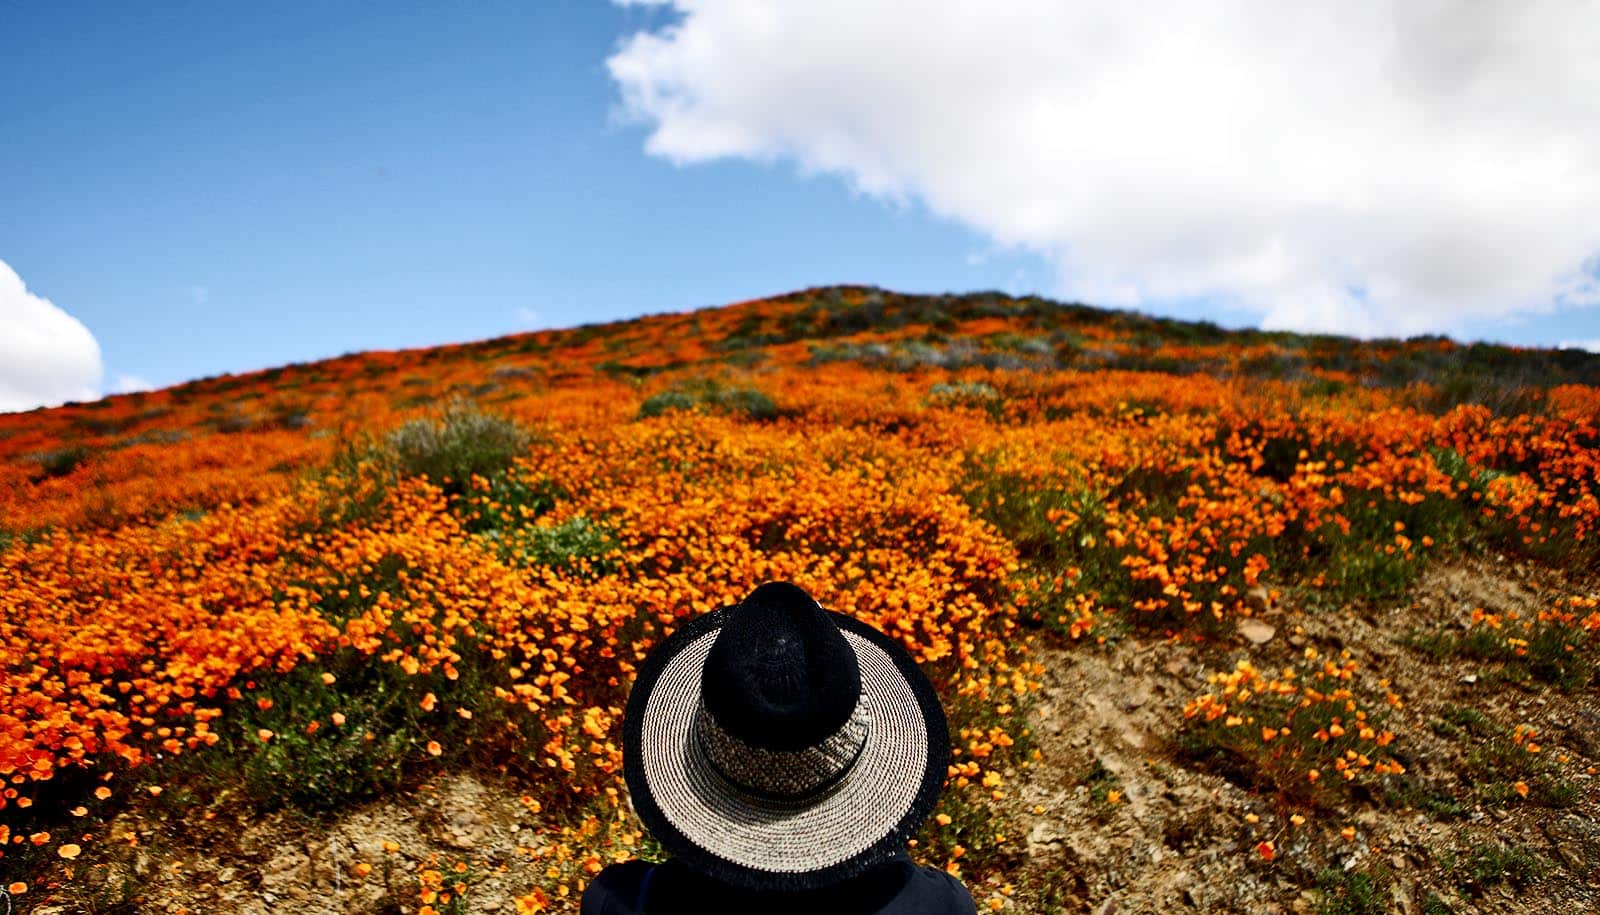 wide-brimmed hat in foreground; orange poppies on hillside